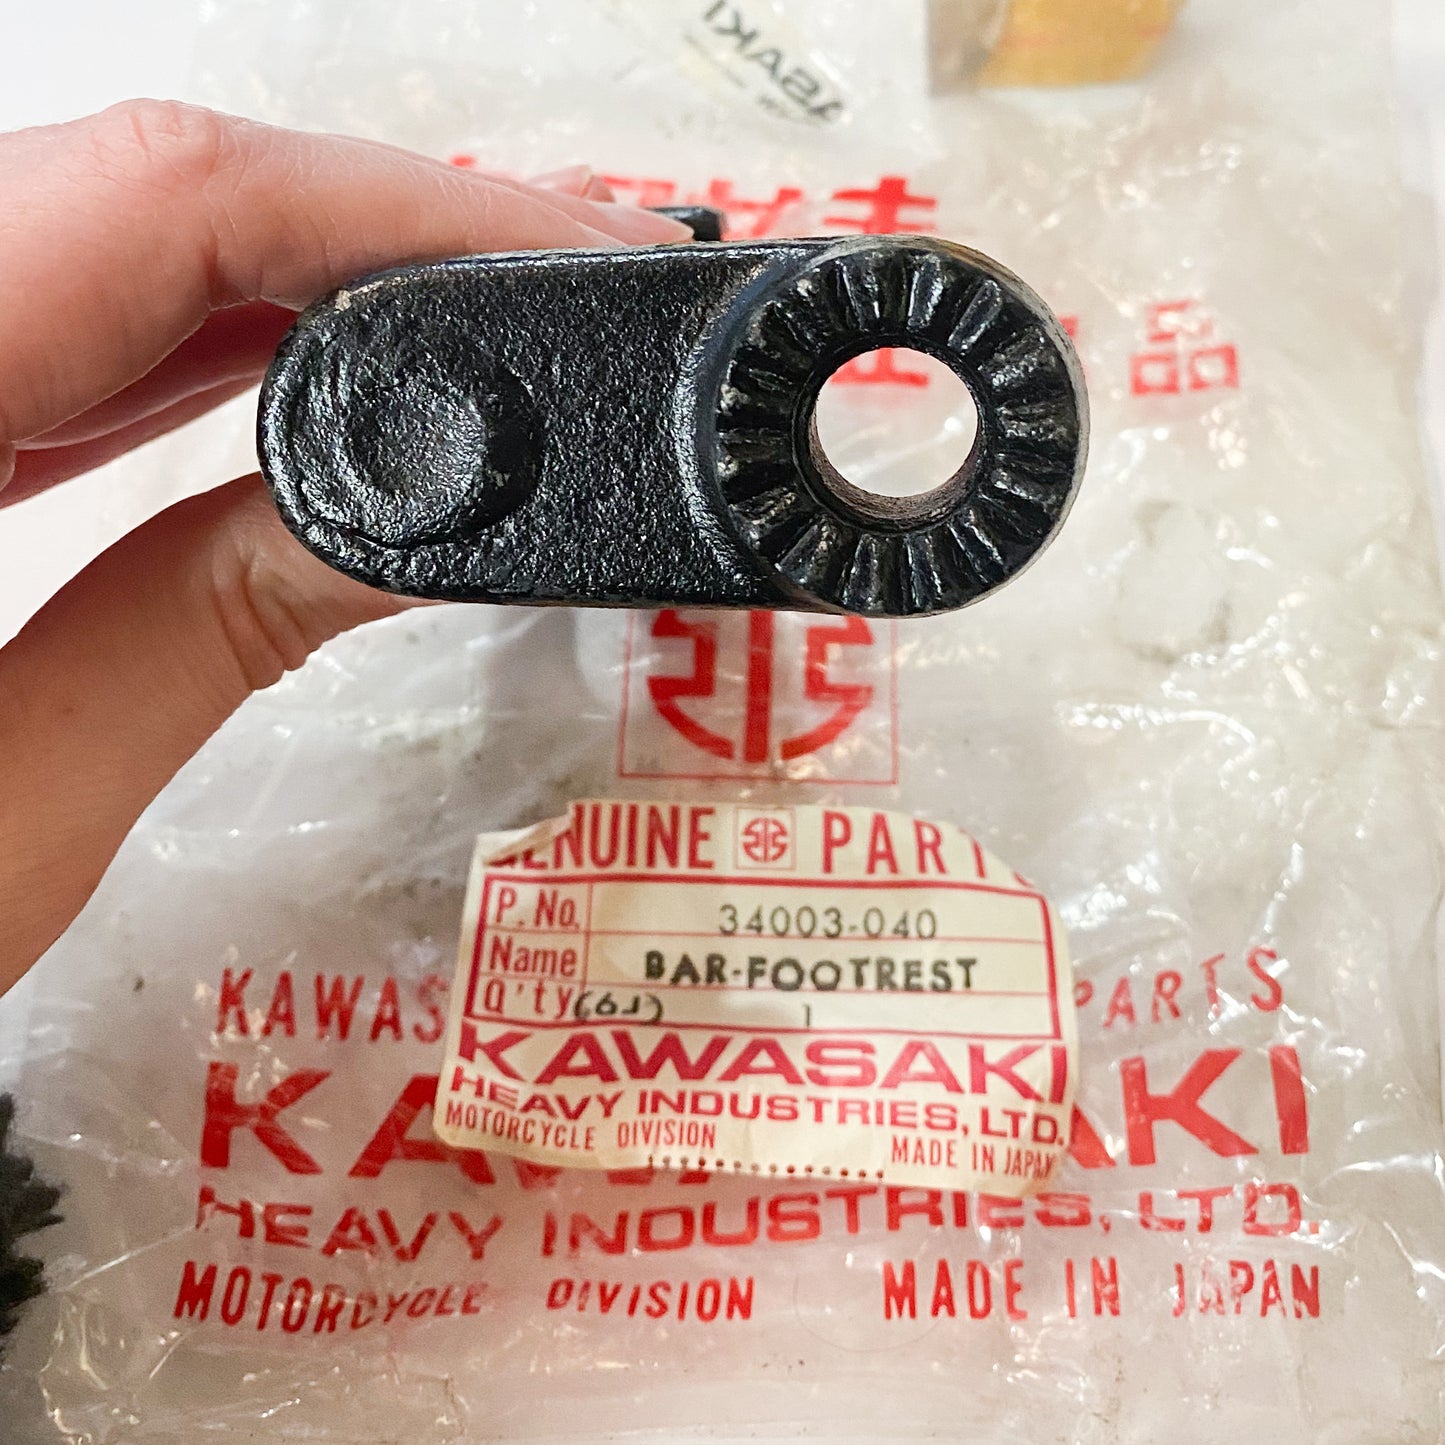 KAWASAKI HOLDER-FOTREST BAR LH 34003-040